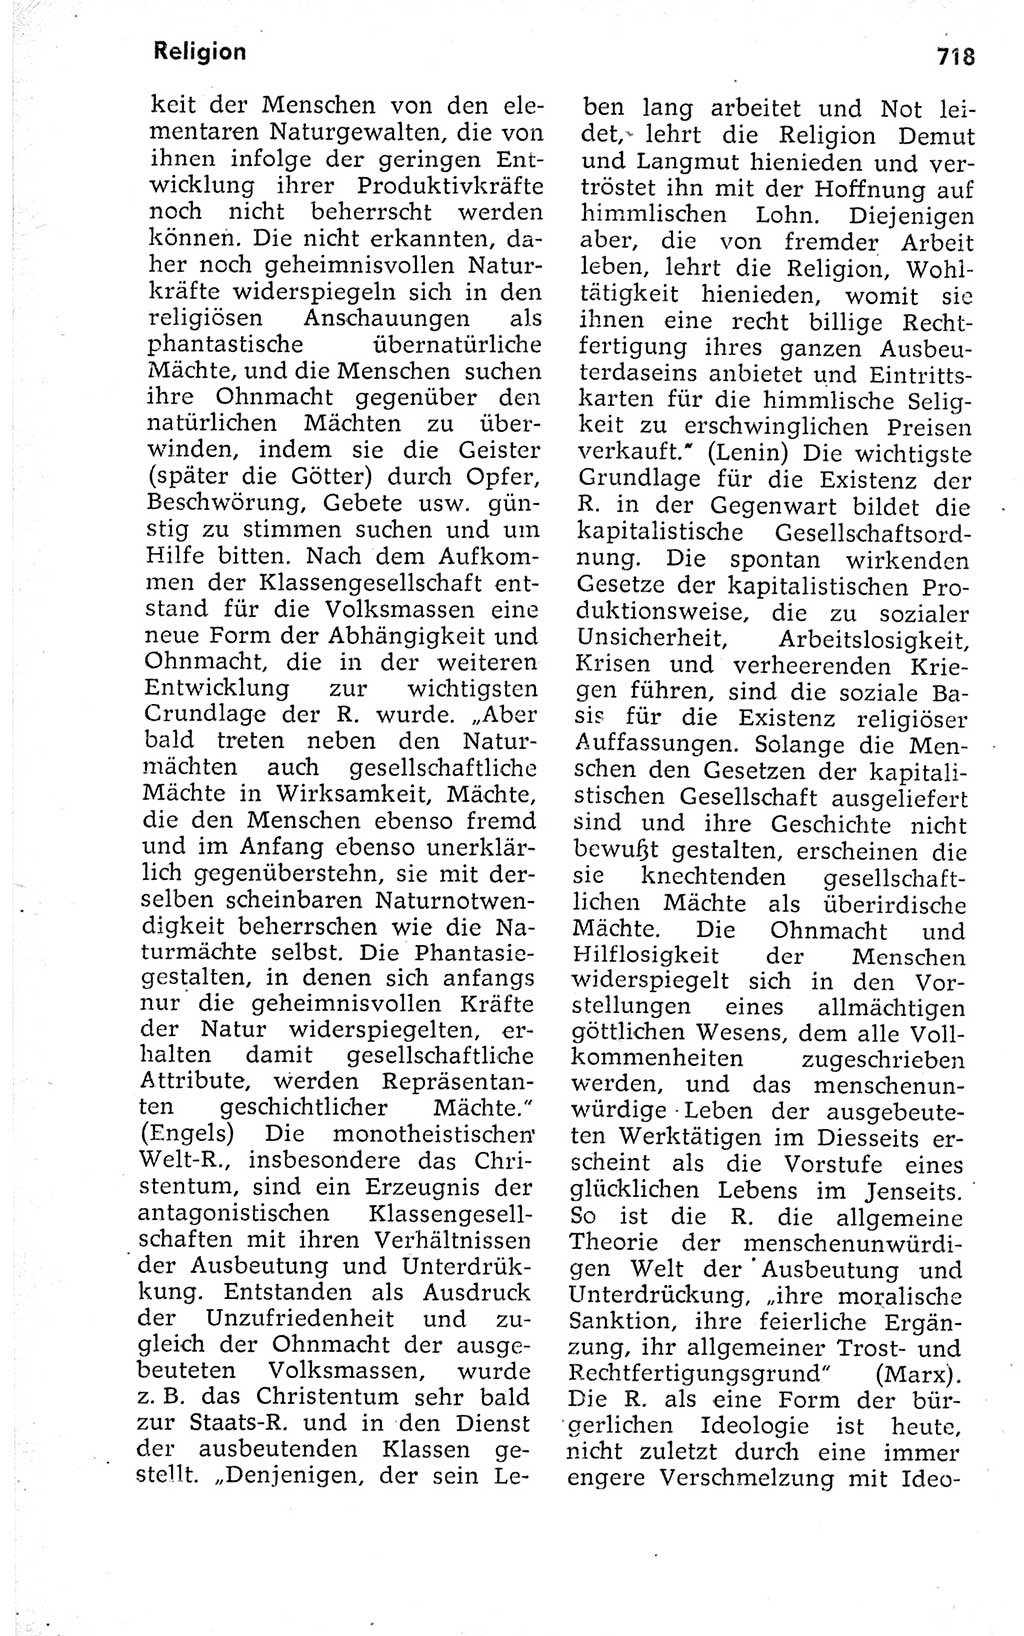 Kleines politisches Wörterbuch [Deutsche Demokratische Republik (DDR)] 1973, Seite 718 (Kl. pol. Wb. DDR 1973, S. 718)